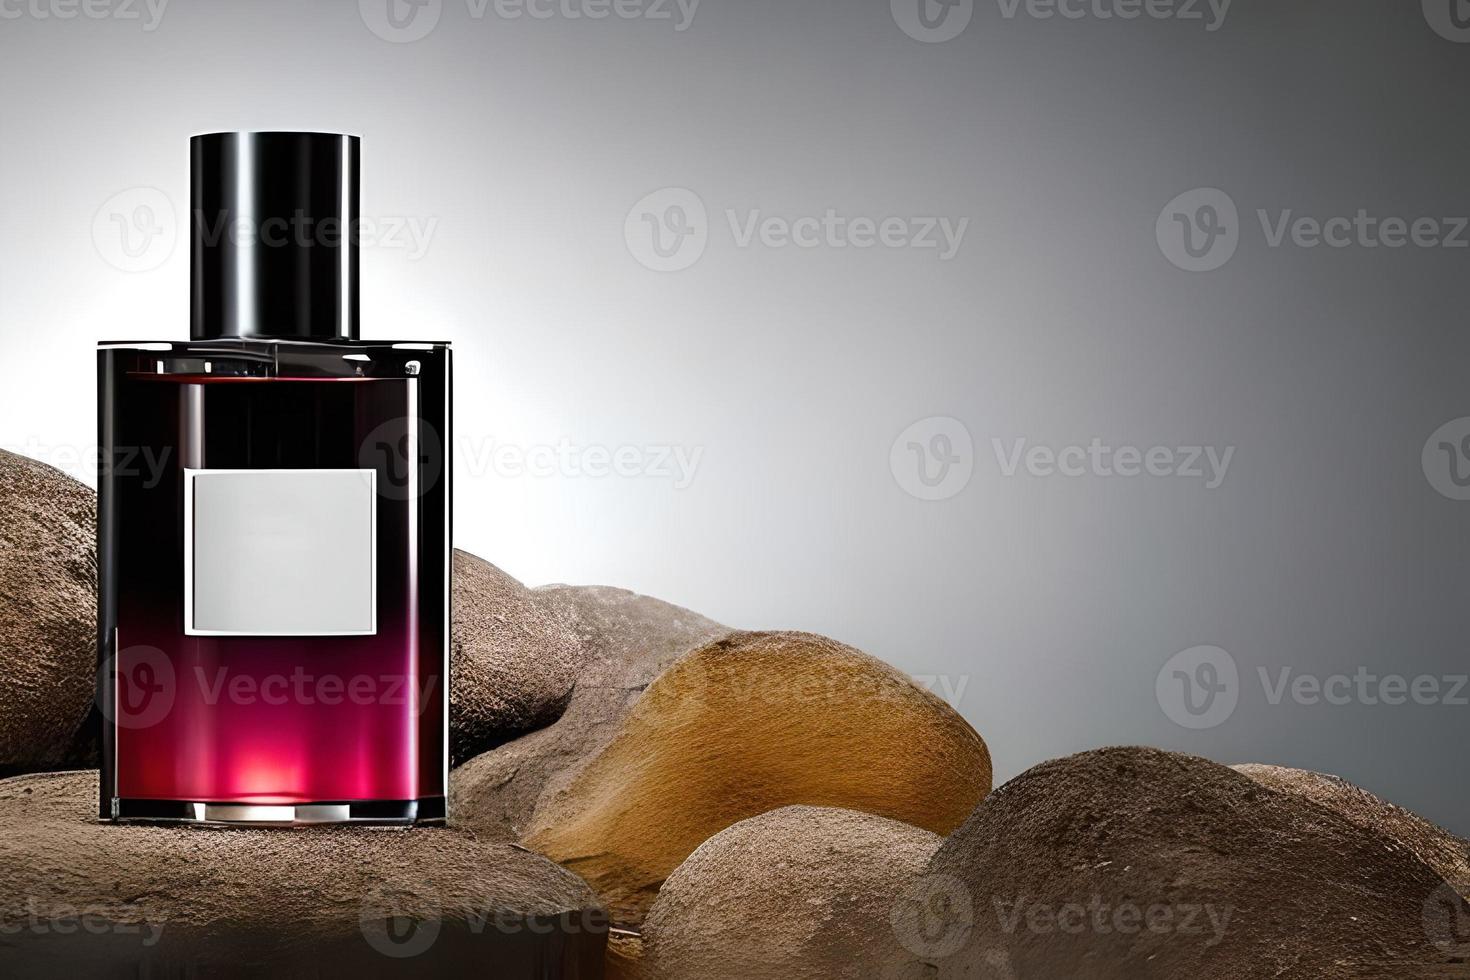 rood en zwart fles parfum mockup Product studio schot geïsoleerd. foto